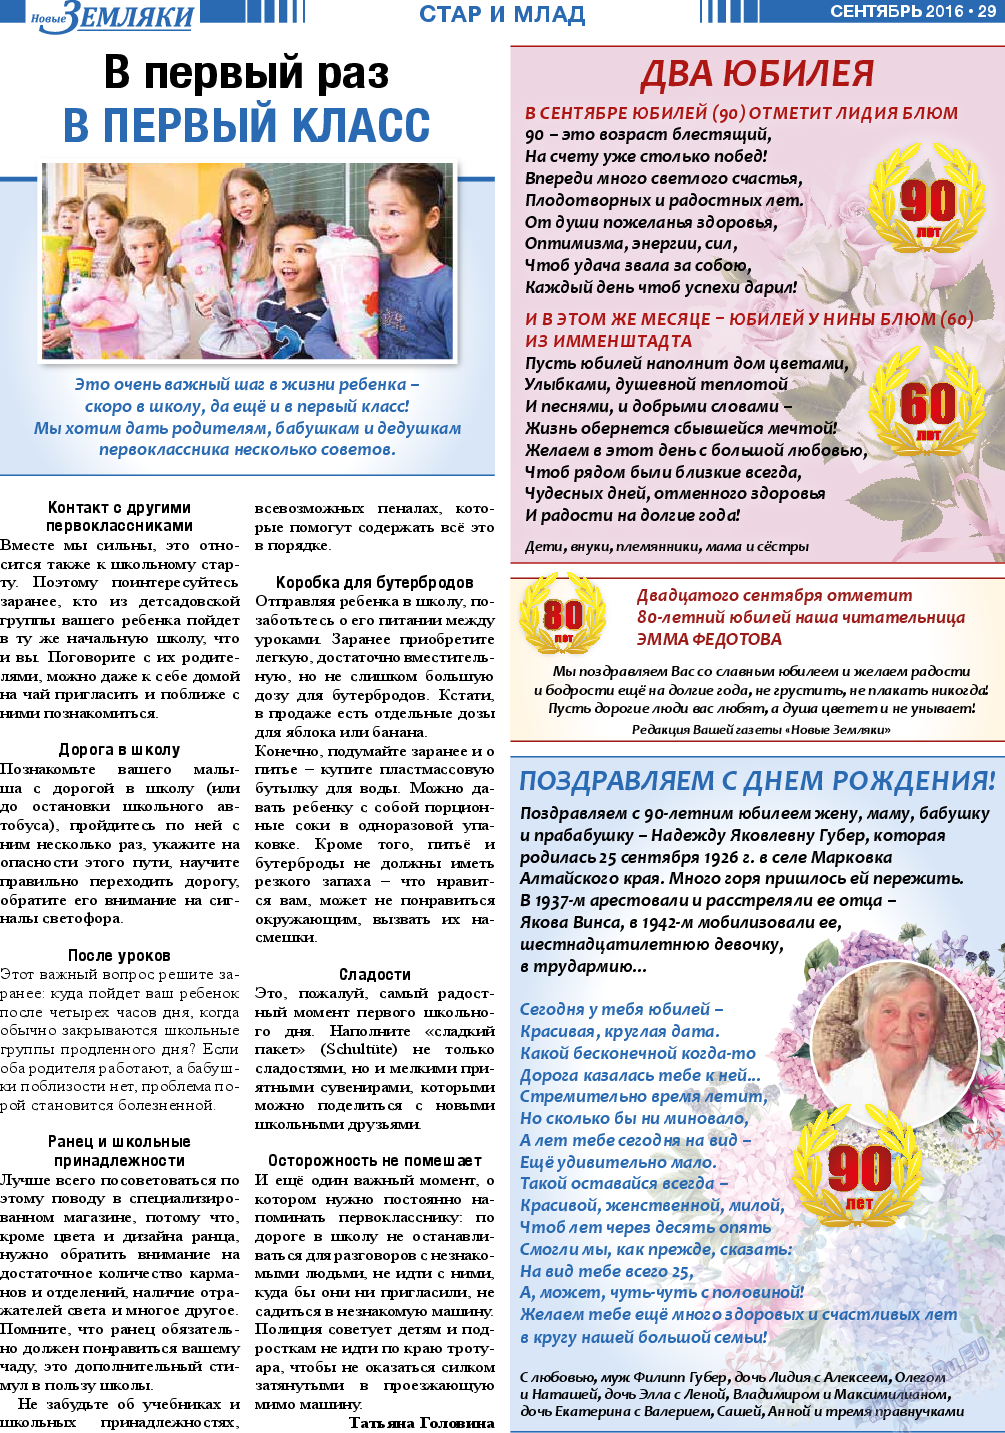 Новые Земляки, газета. 2016 №9 стр.29